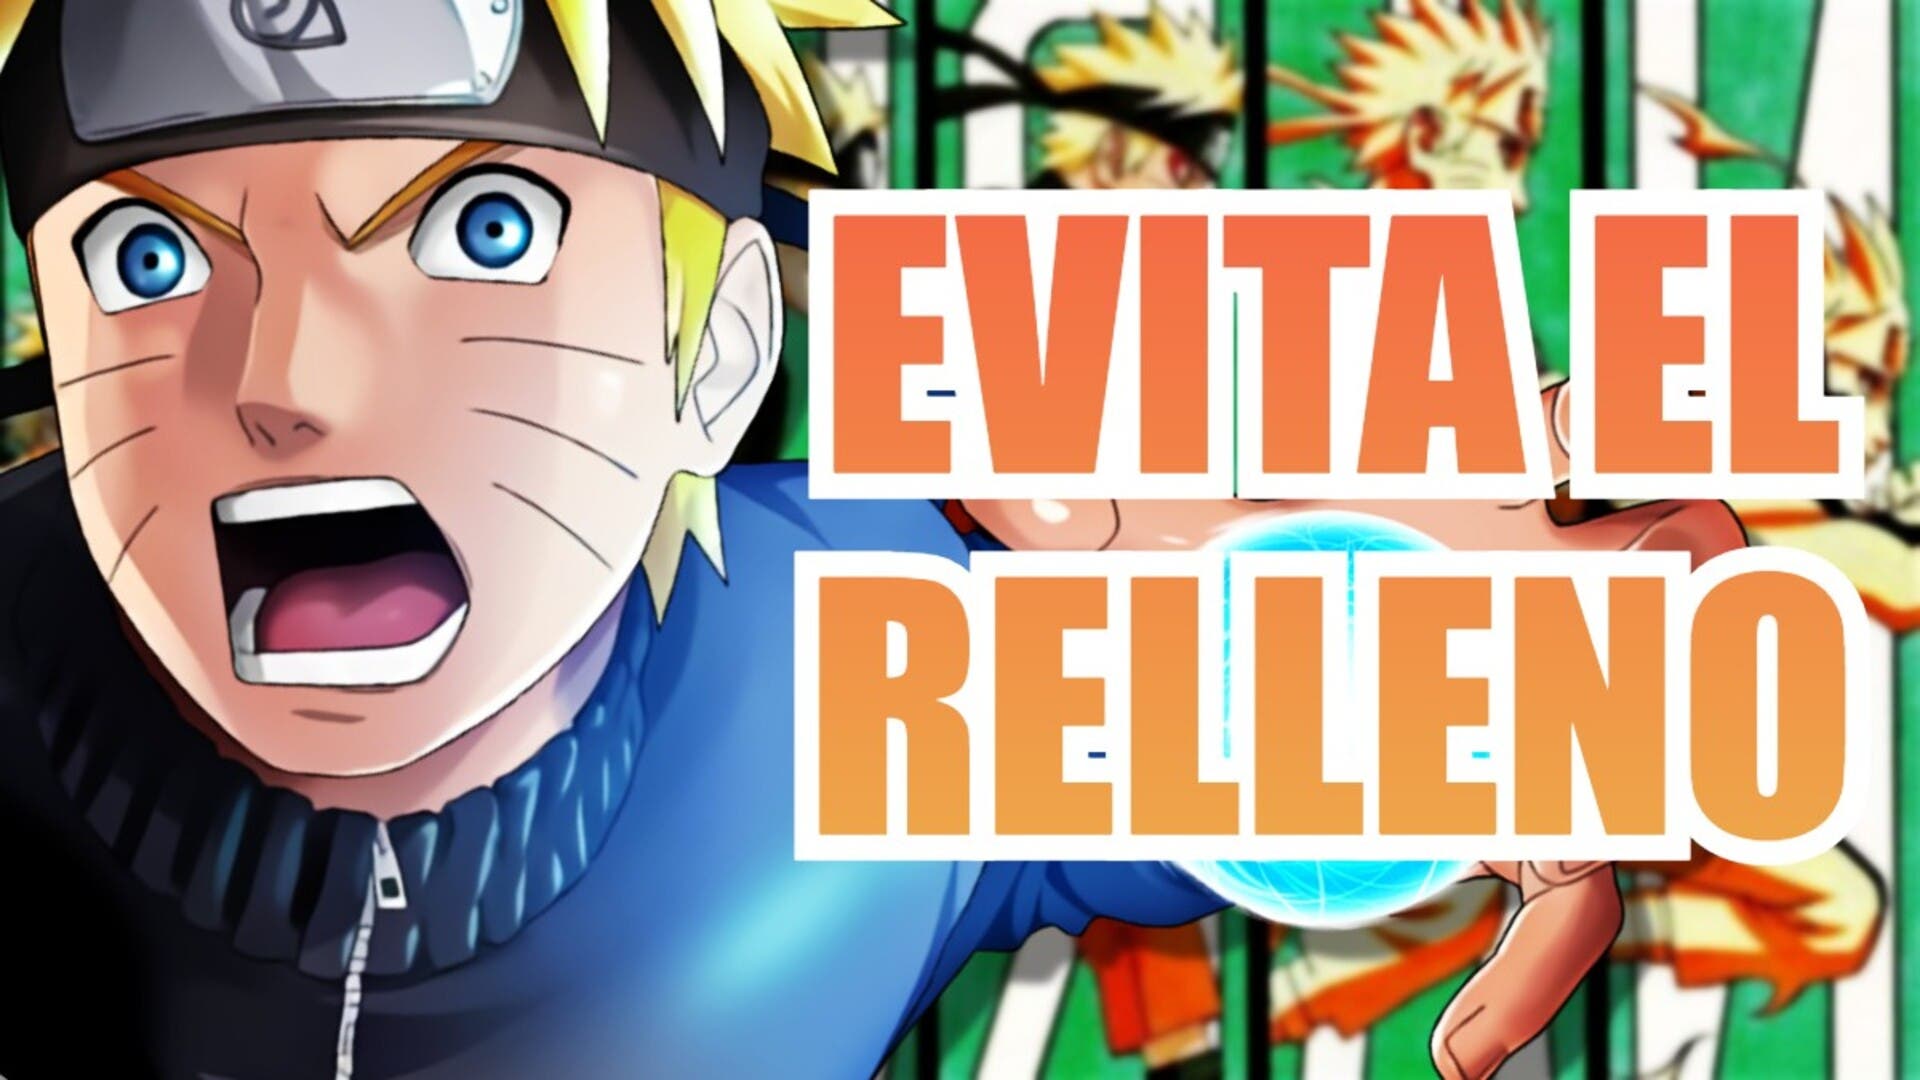 Naruto Shippuden: guía completa para ver el anime sin episodios de